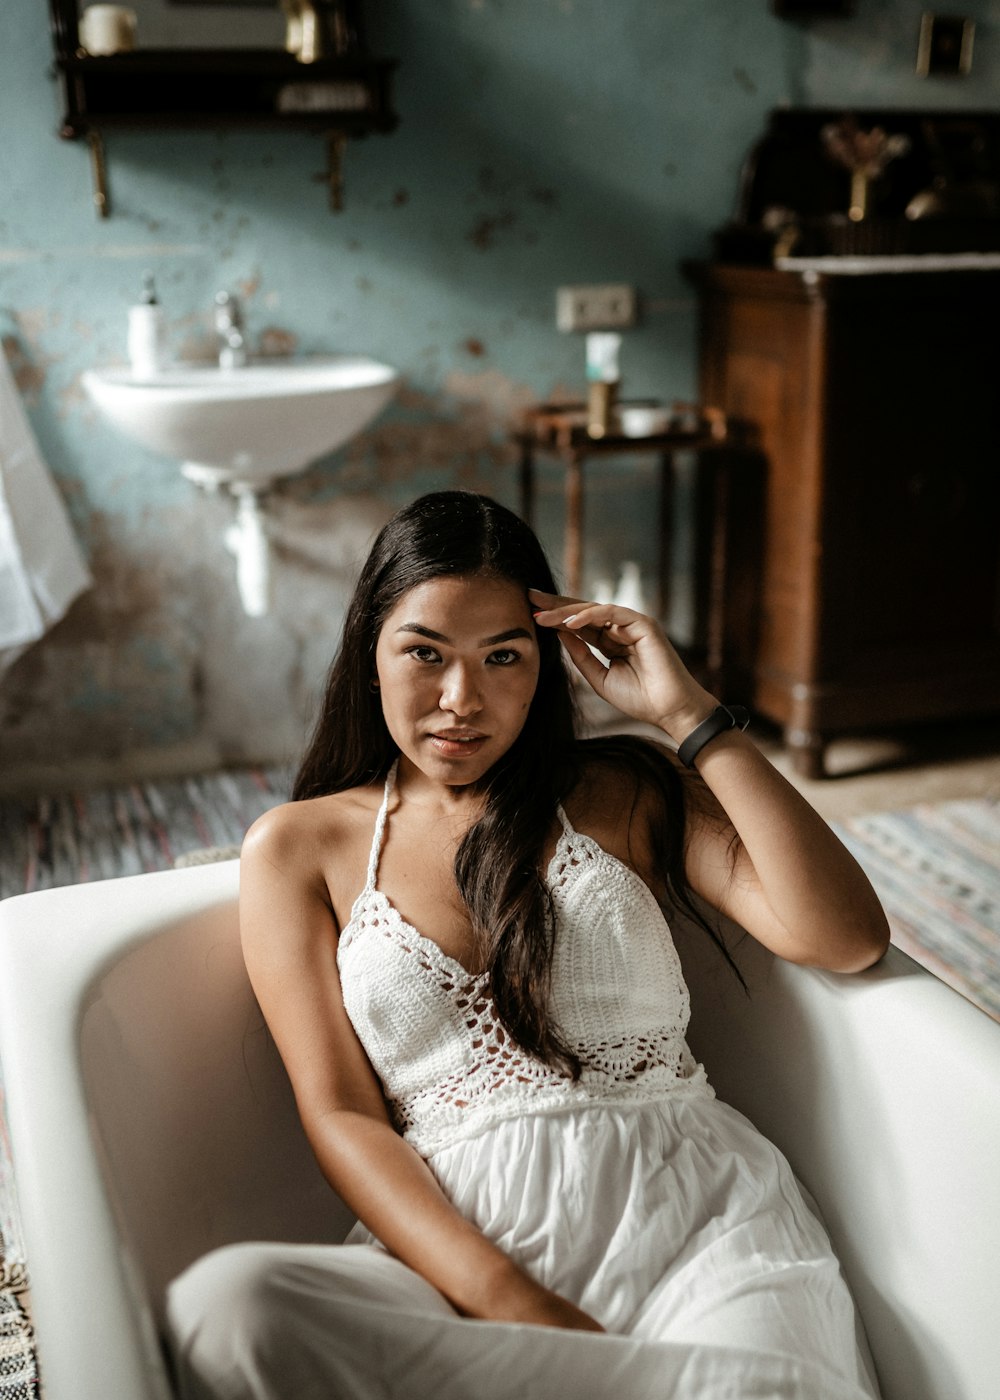 Femme en robe blanche sans manches assise sur une baignoire en céramique  blanche photo – Photo Lituania Gratuite sur Unsplash